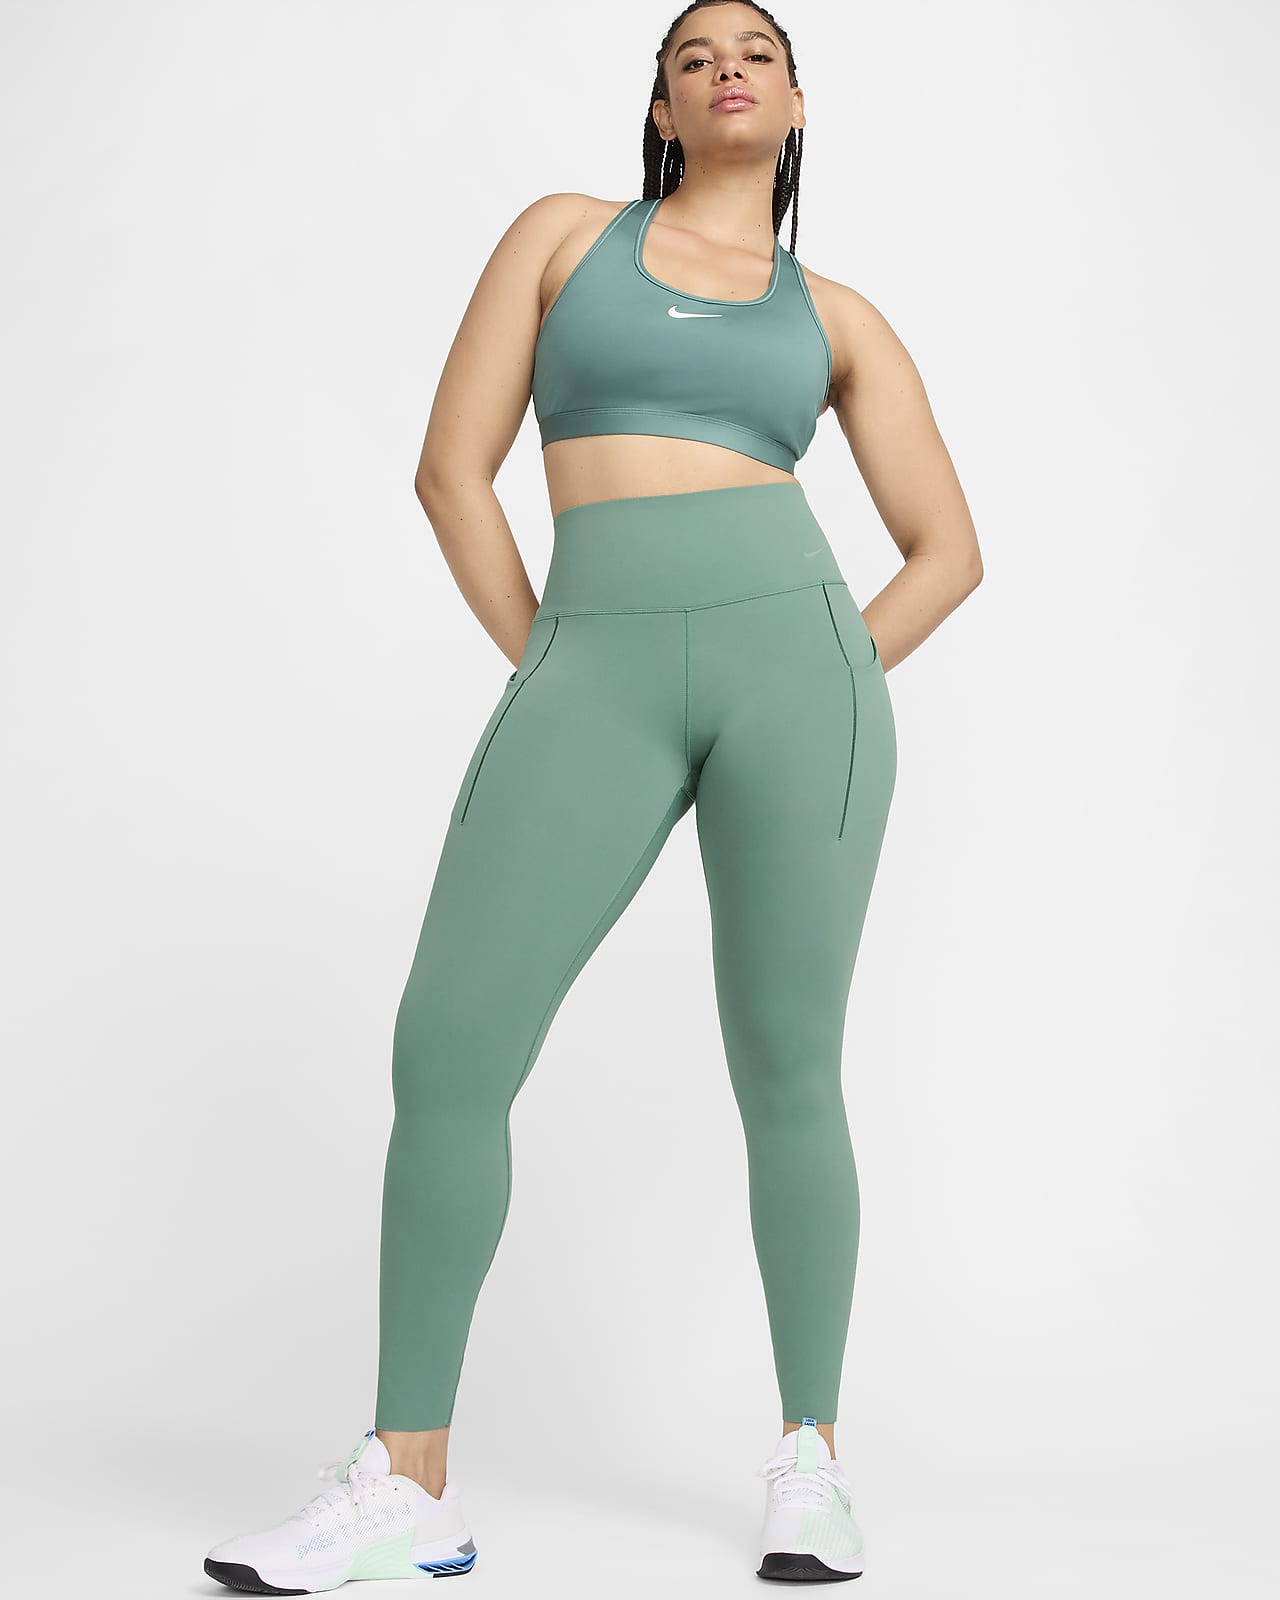 Nike Universa-leggings i fuld længde med medium støtte, høj talje og lommer til kvinder